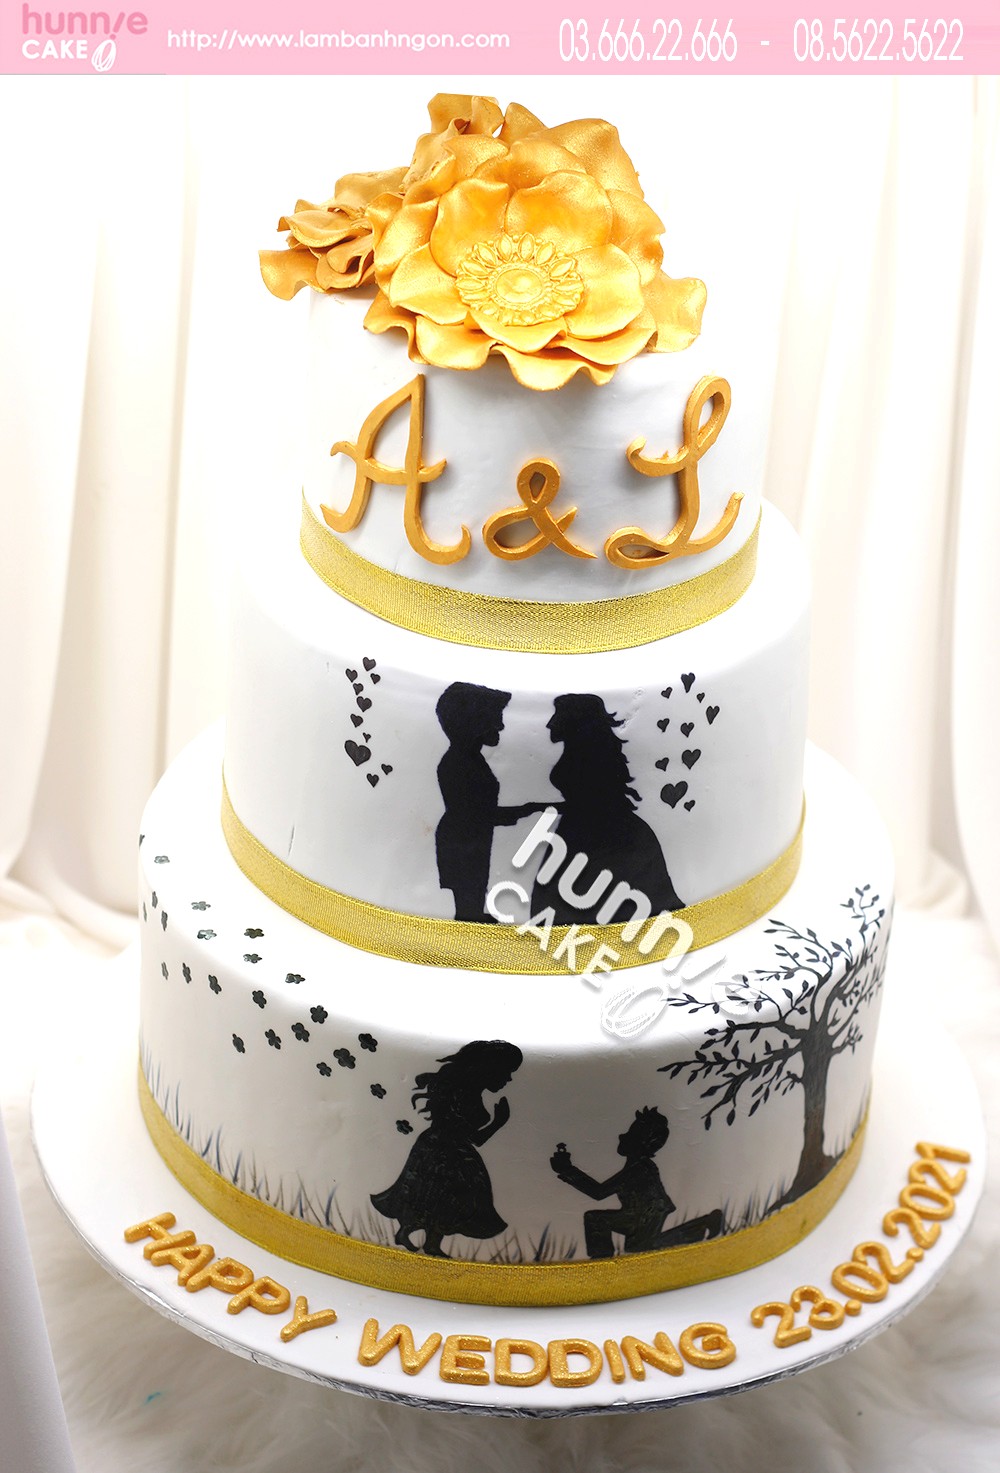 Bánh 3 tầng sinh nhật kỷ niệm ngày cưới đẹp 8055 - Bánh ngon đẹp